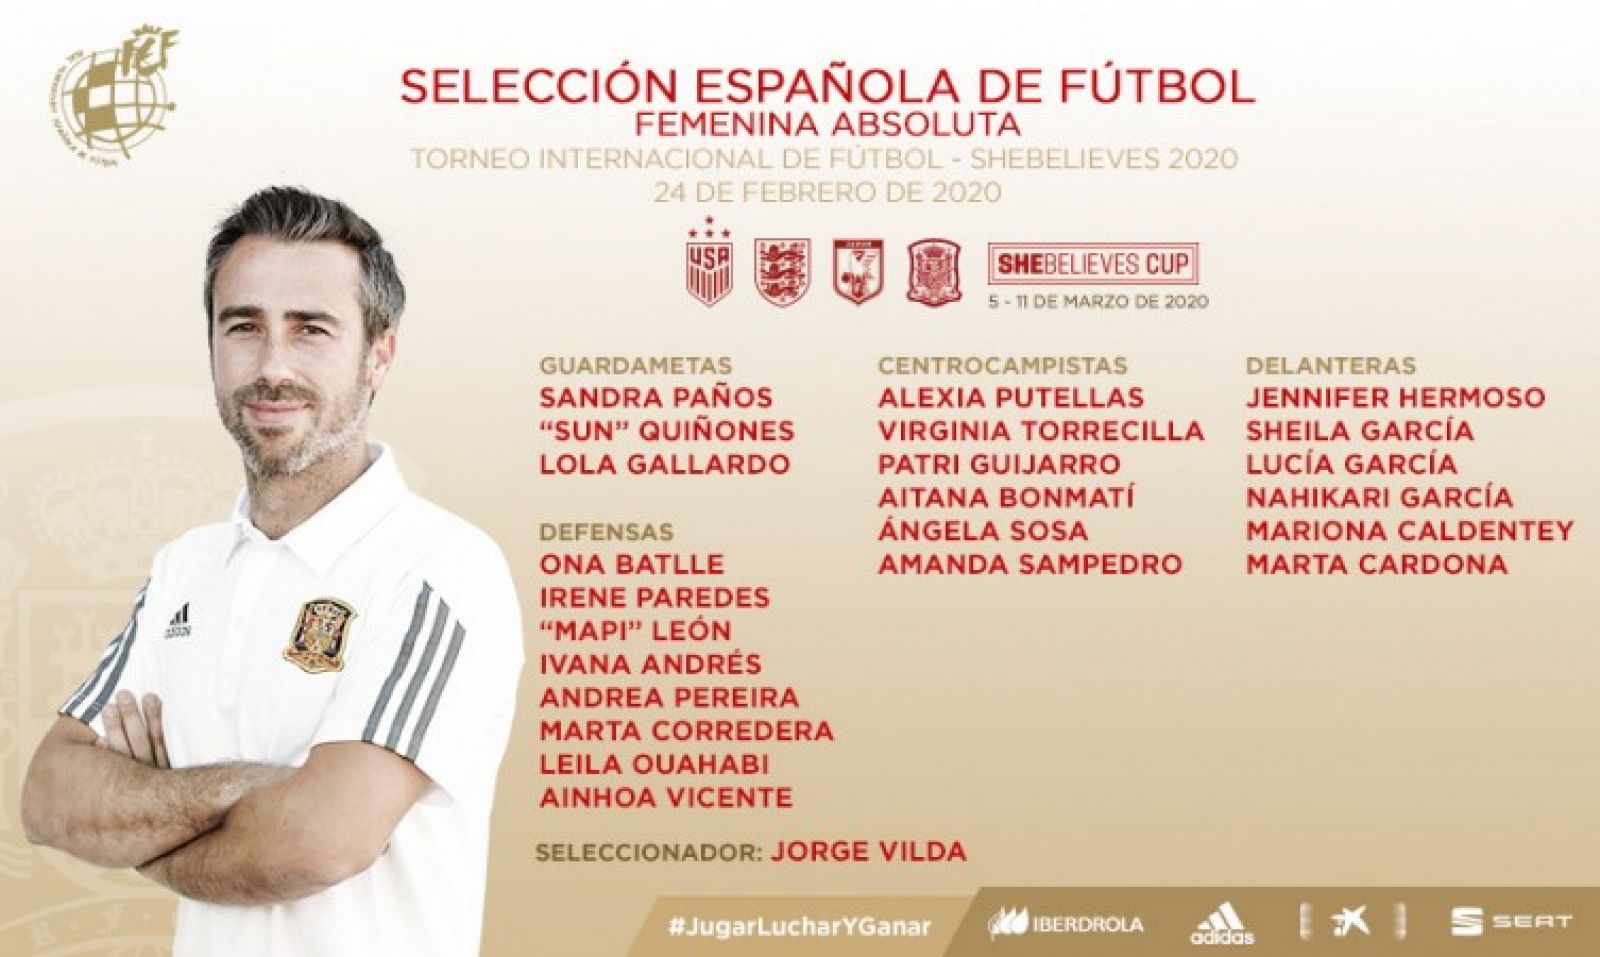 Imagen de la convocatoria de la selección española femenina de fútbol.